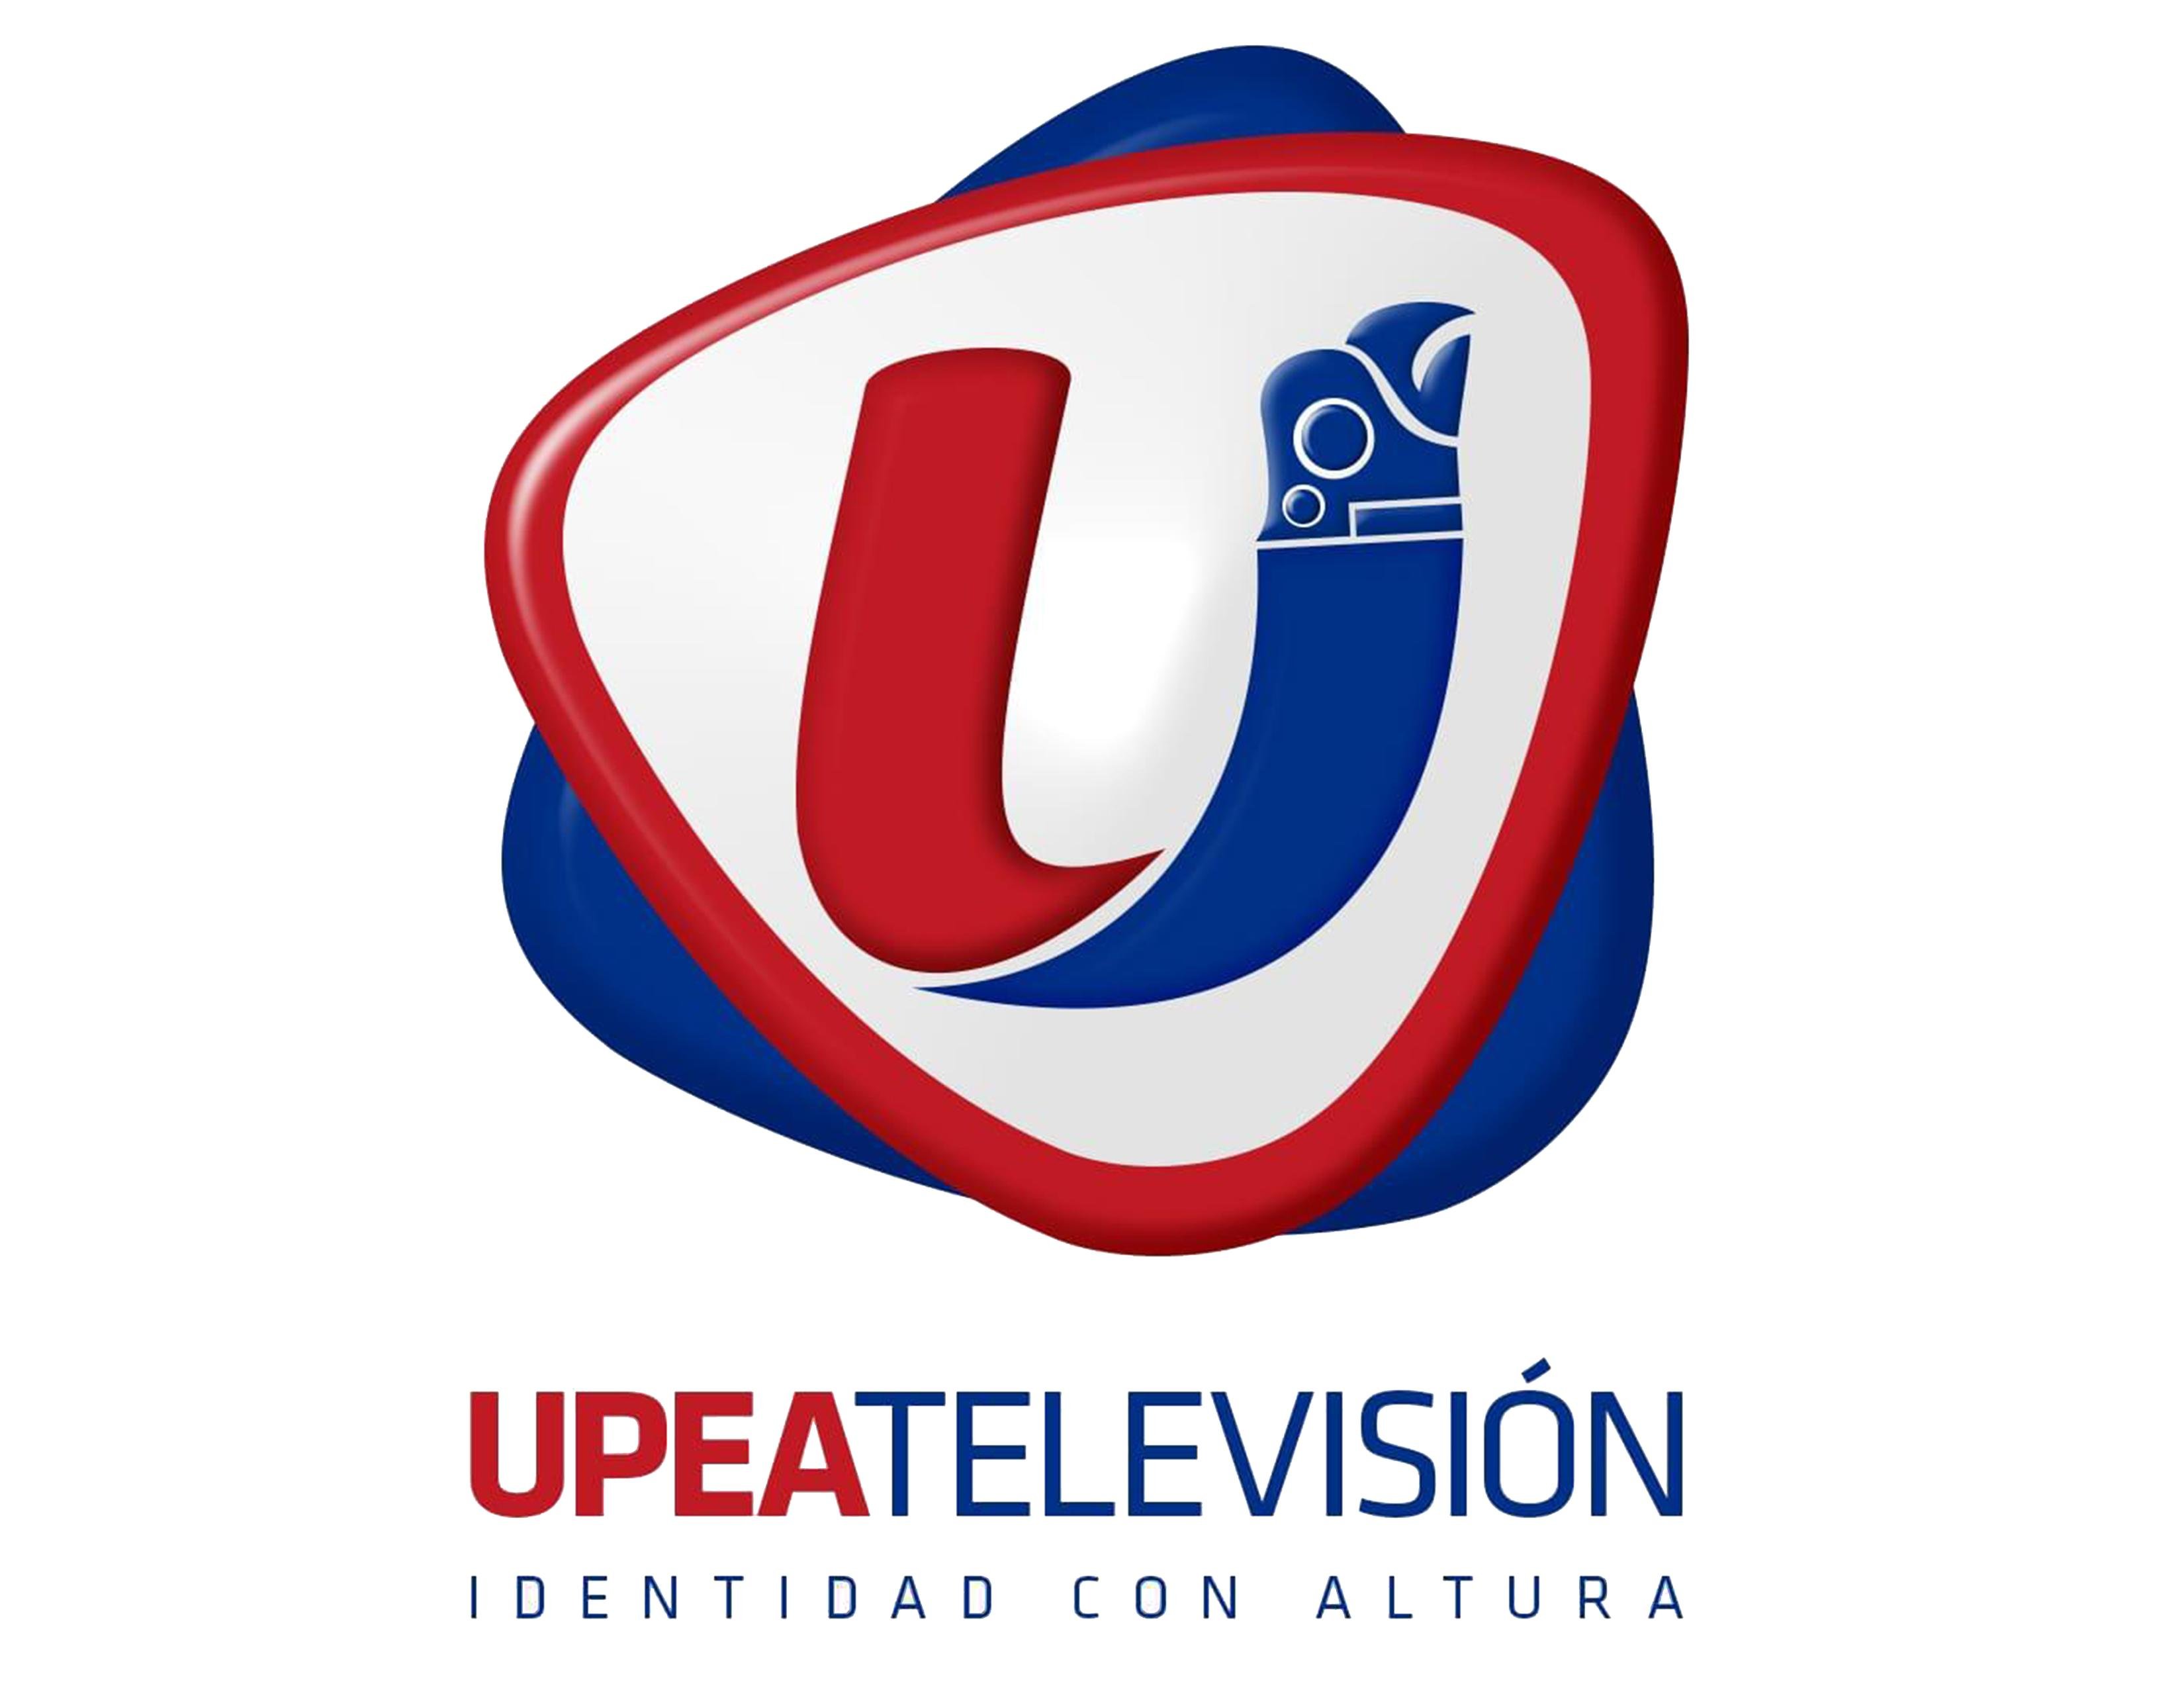 UPEA TV es un canal de televisión pública, creado con el objetivo de enriquecer la oferta de contenidos audiovisuales que promuevan la formación educativa.